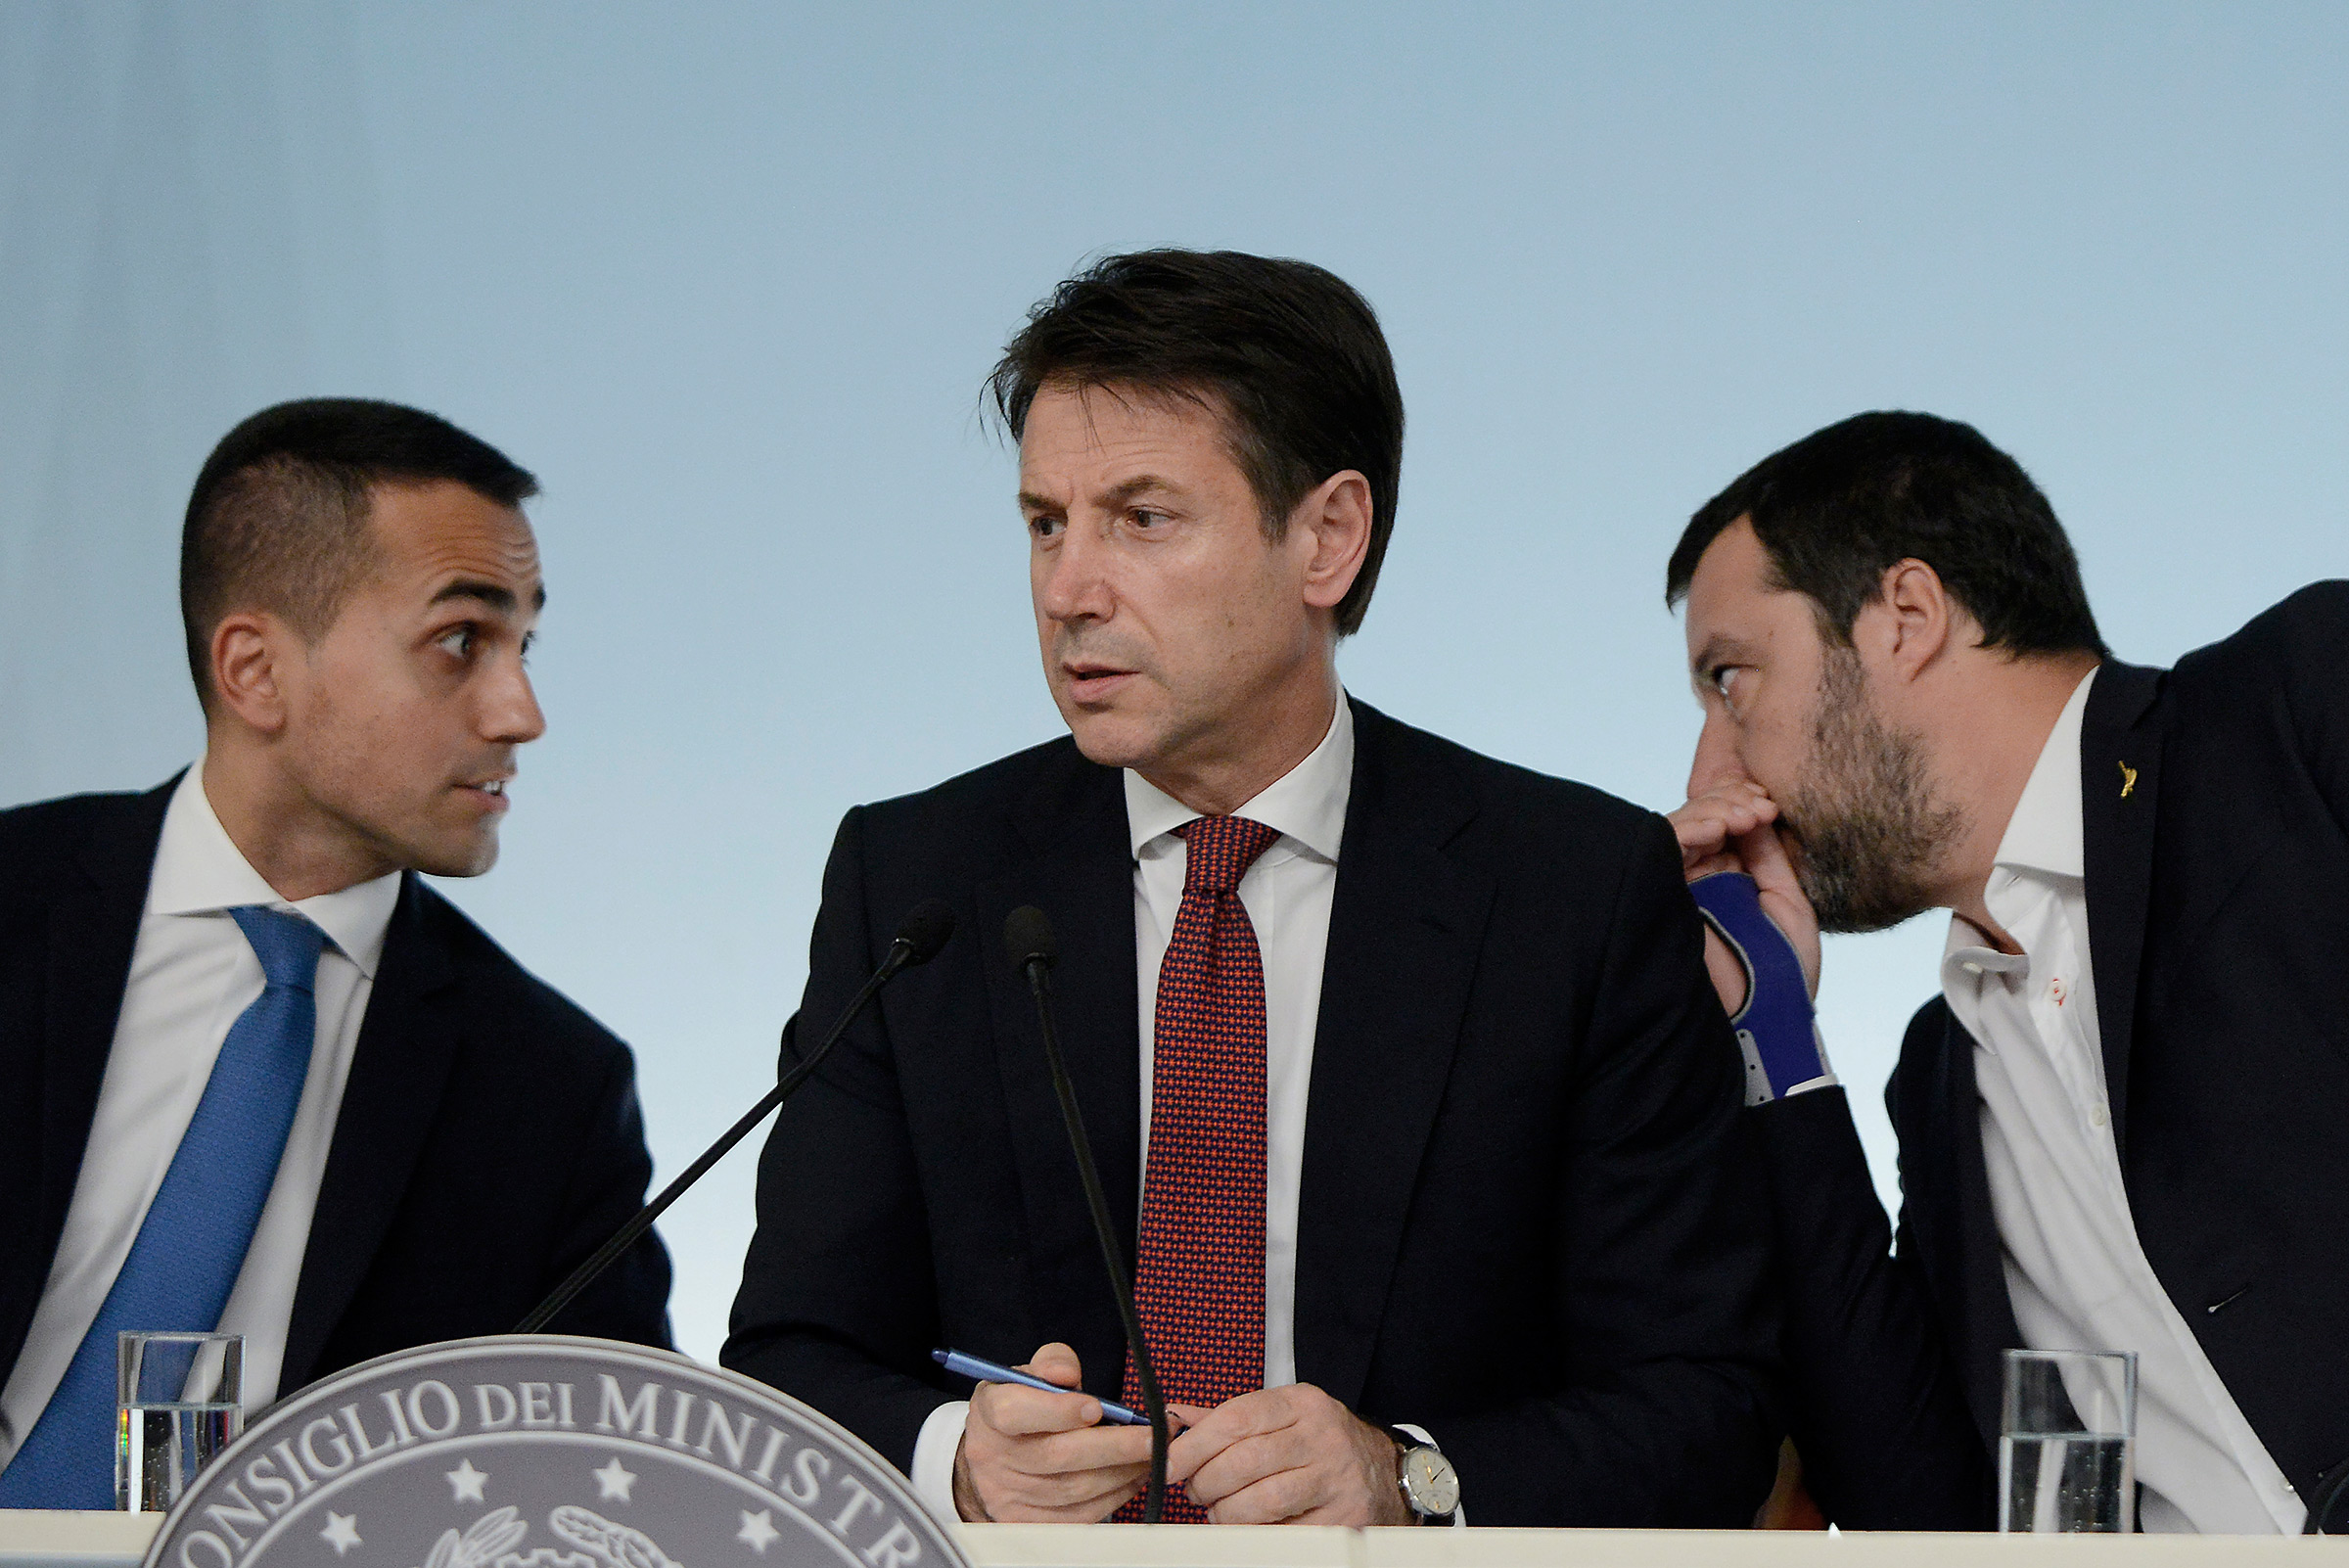 Five Star head Luigi Di Maio, Prime Minister Giuseppe Conte, and League leader Matteo Salvini at a press conference in Rome, Italy on Oct. 20, 2018. (Simona Granati—Corbis/Getty Images)